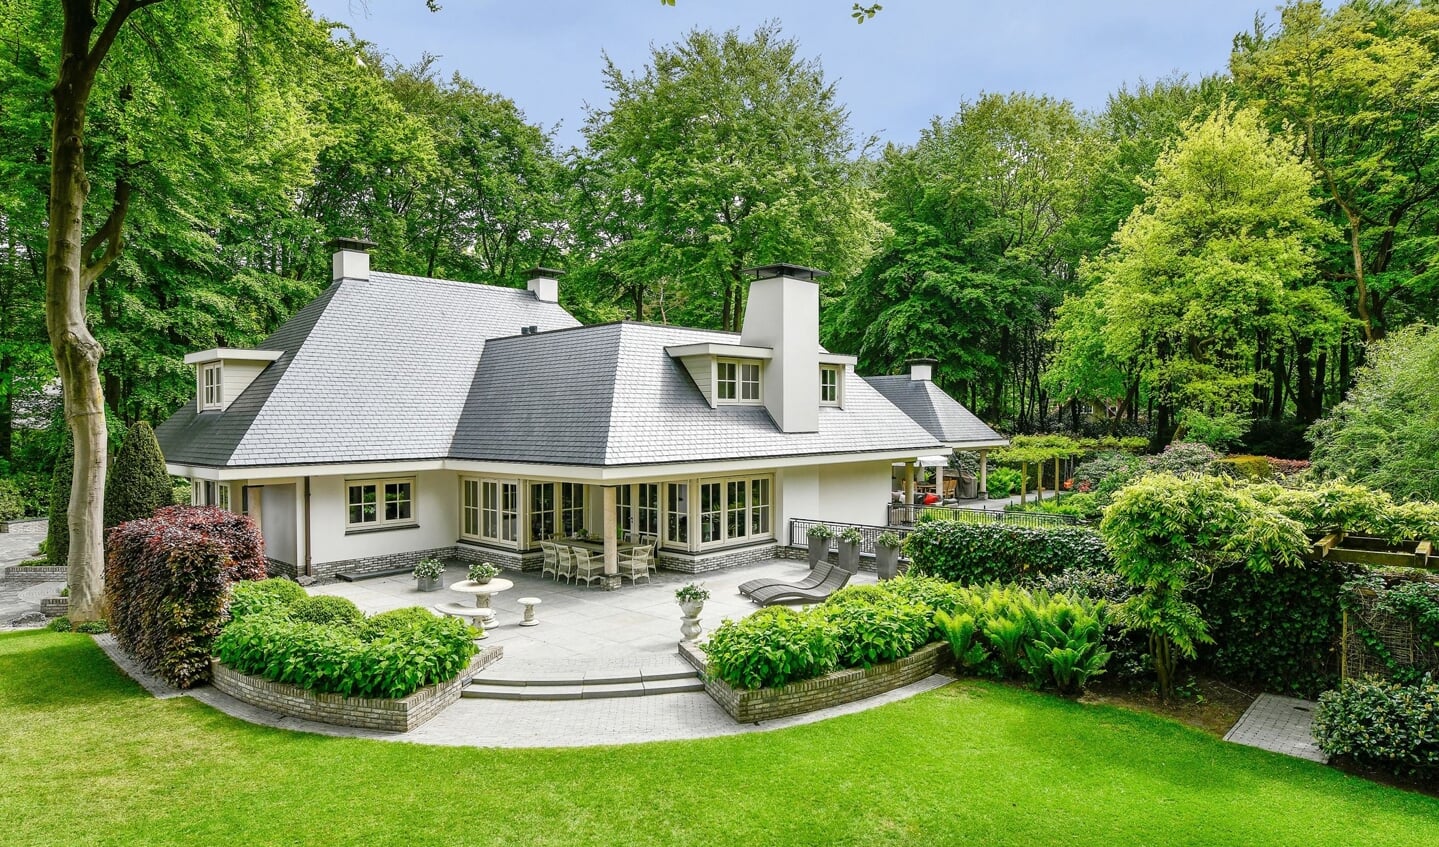 Villa aan de Bosrand in Putten, vraagprijs 1,8 miljoen.